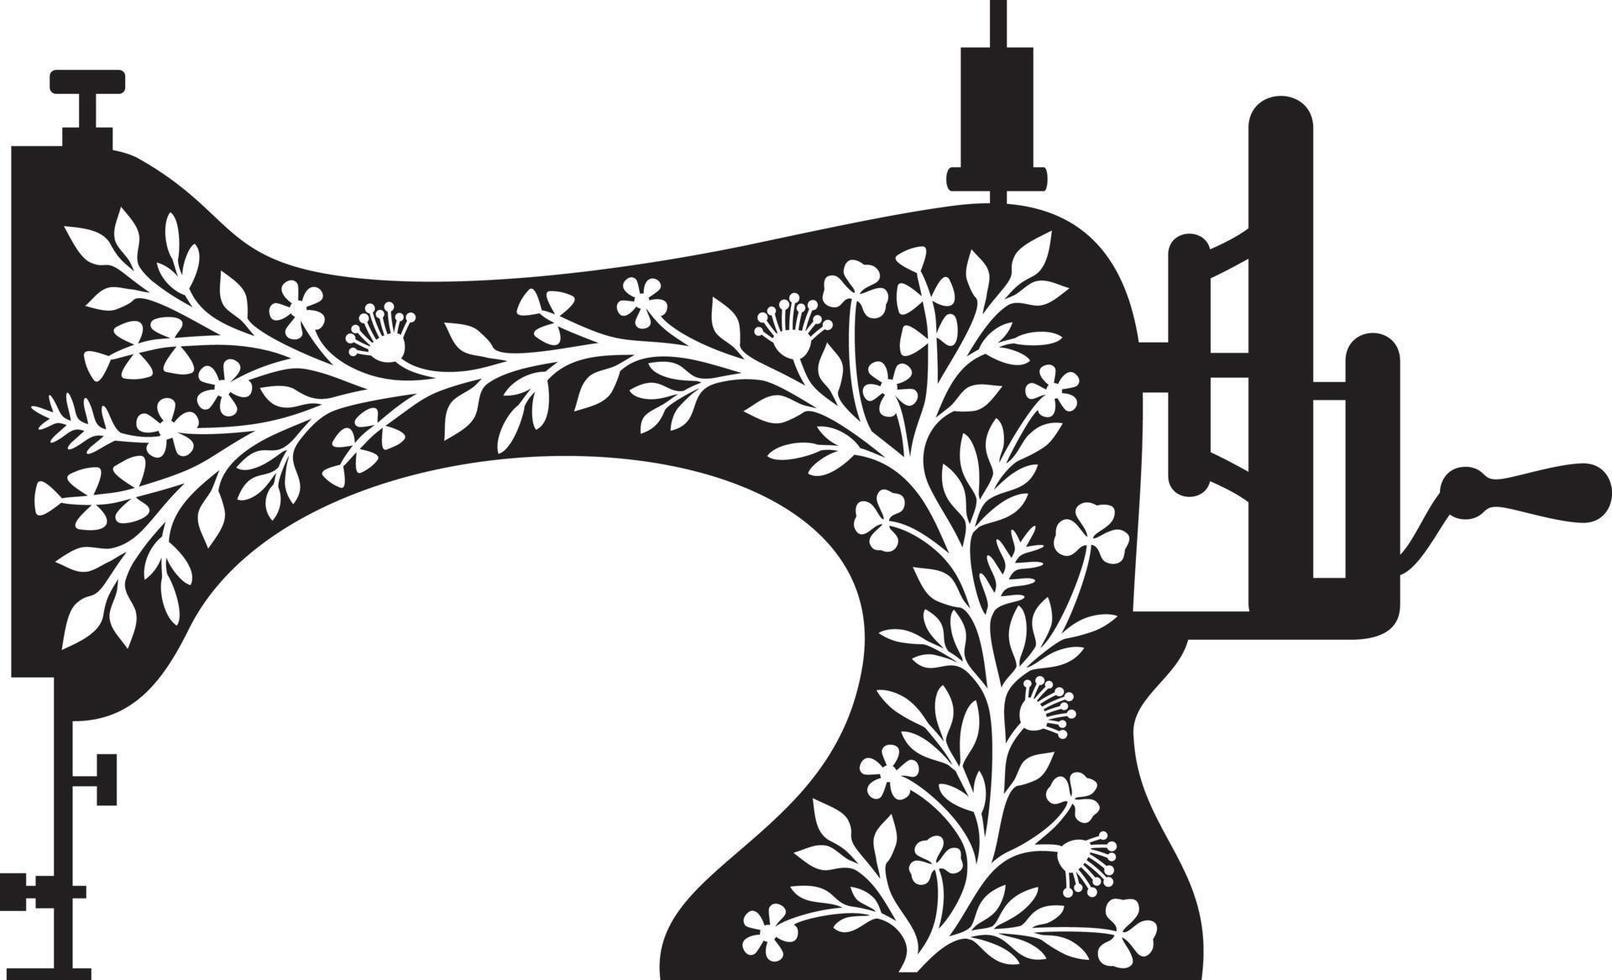 máquina de costura floral - design vintage preto e branco. ilustração vetorial. vetor